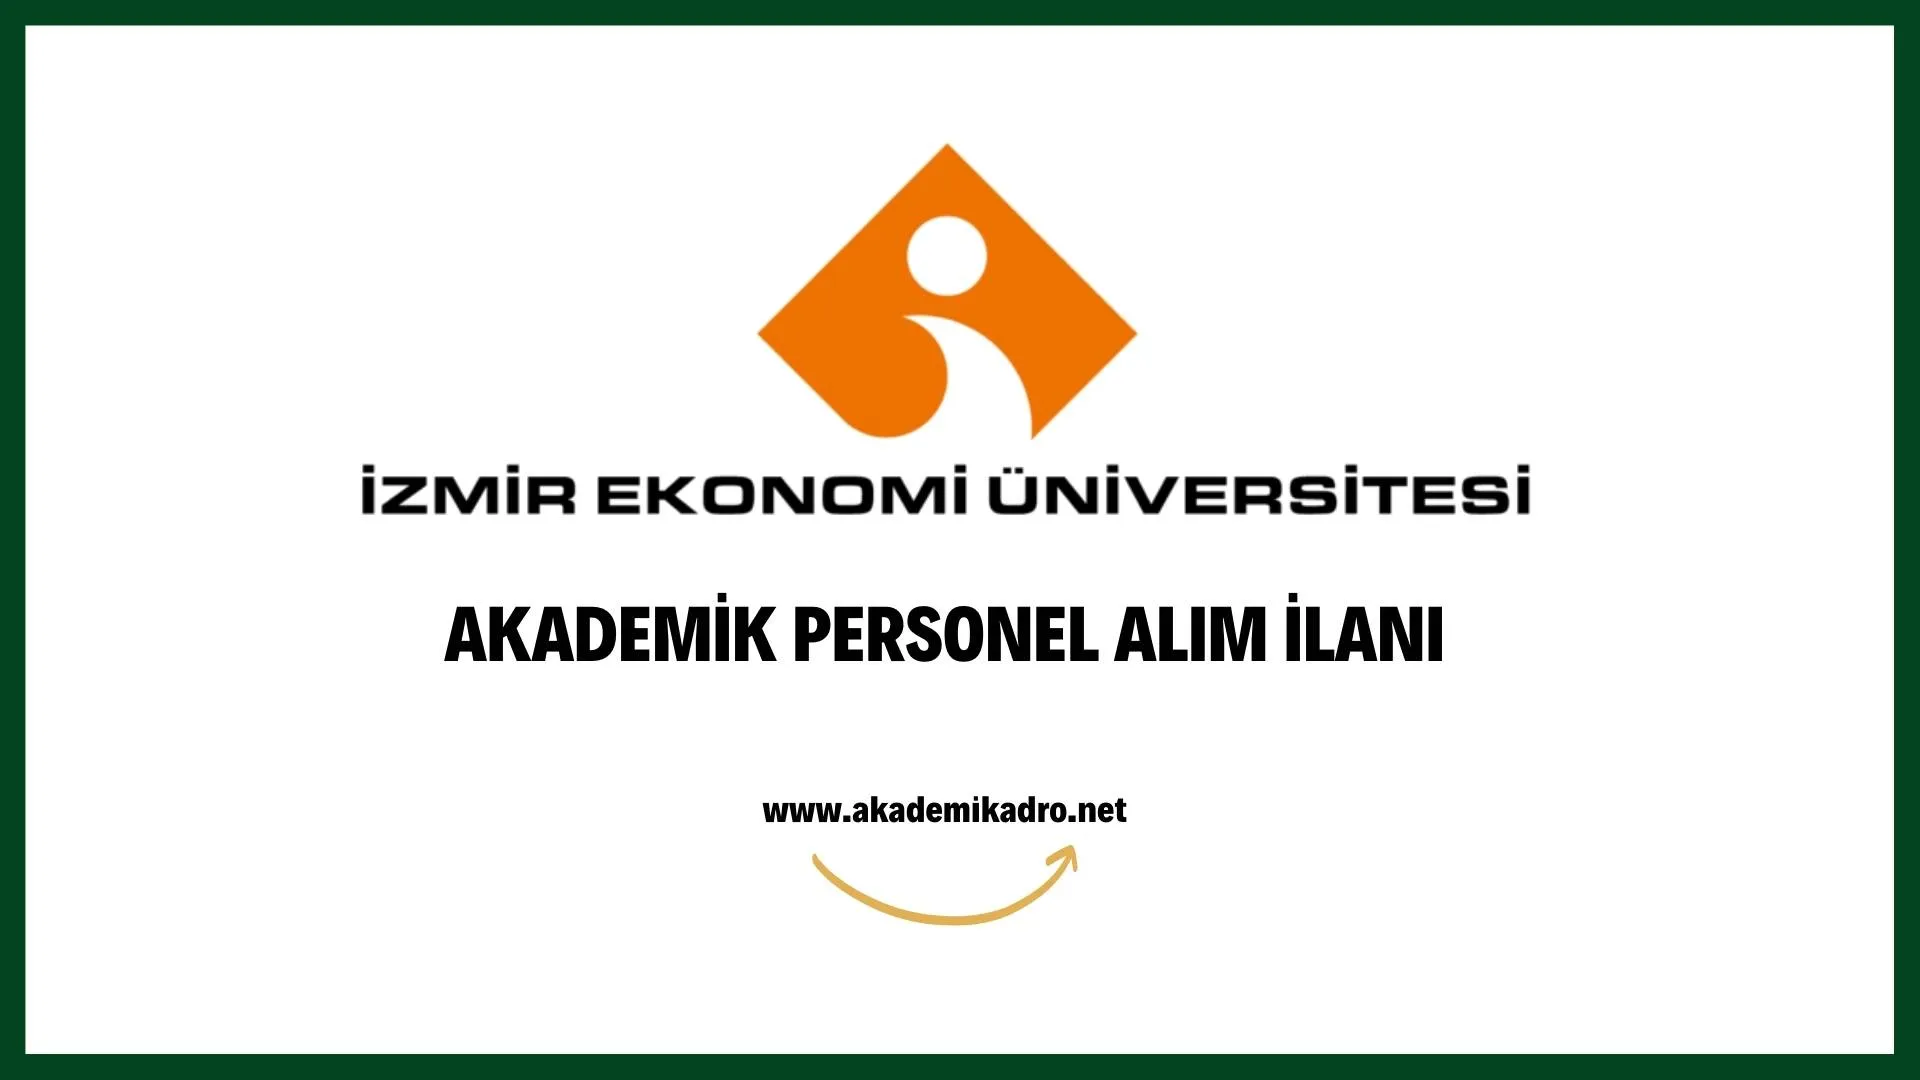 İzmir Ekonomi Üniversitesi çeşitli branşlarda 10 akademik personel alacak. Son başvuru tarihi 2 Eylül 2022.